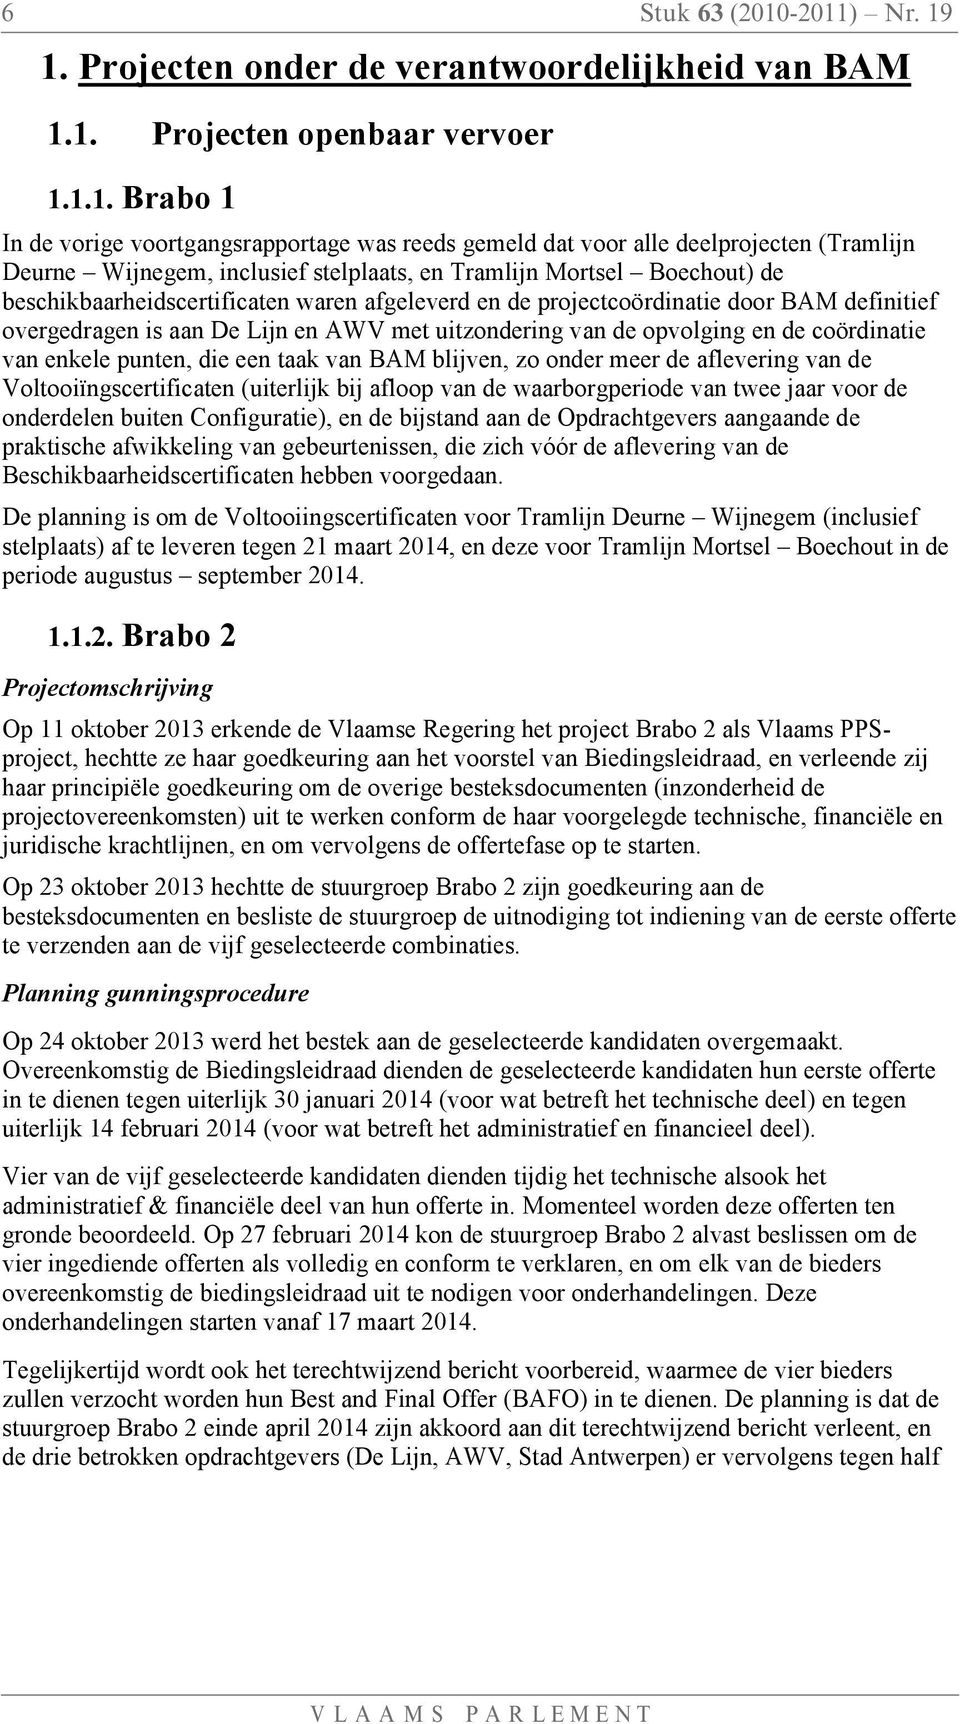 -2011) Nr. 19 1. Projecten onder de verantwoordelijkheid van BAM 1.1. Projecten openbaar vervoer 1.1.1. Brabo 1 In de vorige voortgangsrapportage was reeds gemeld dat voor alle deelprojecten